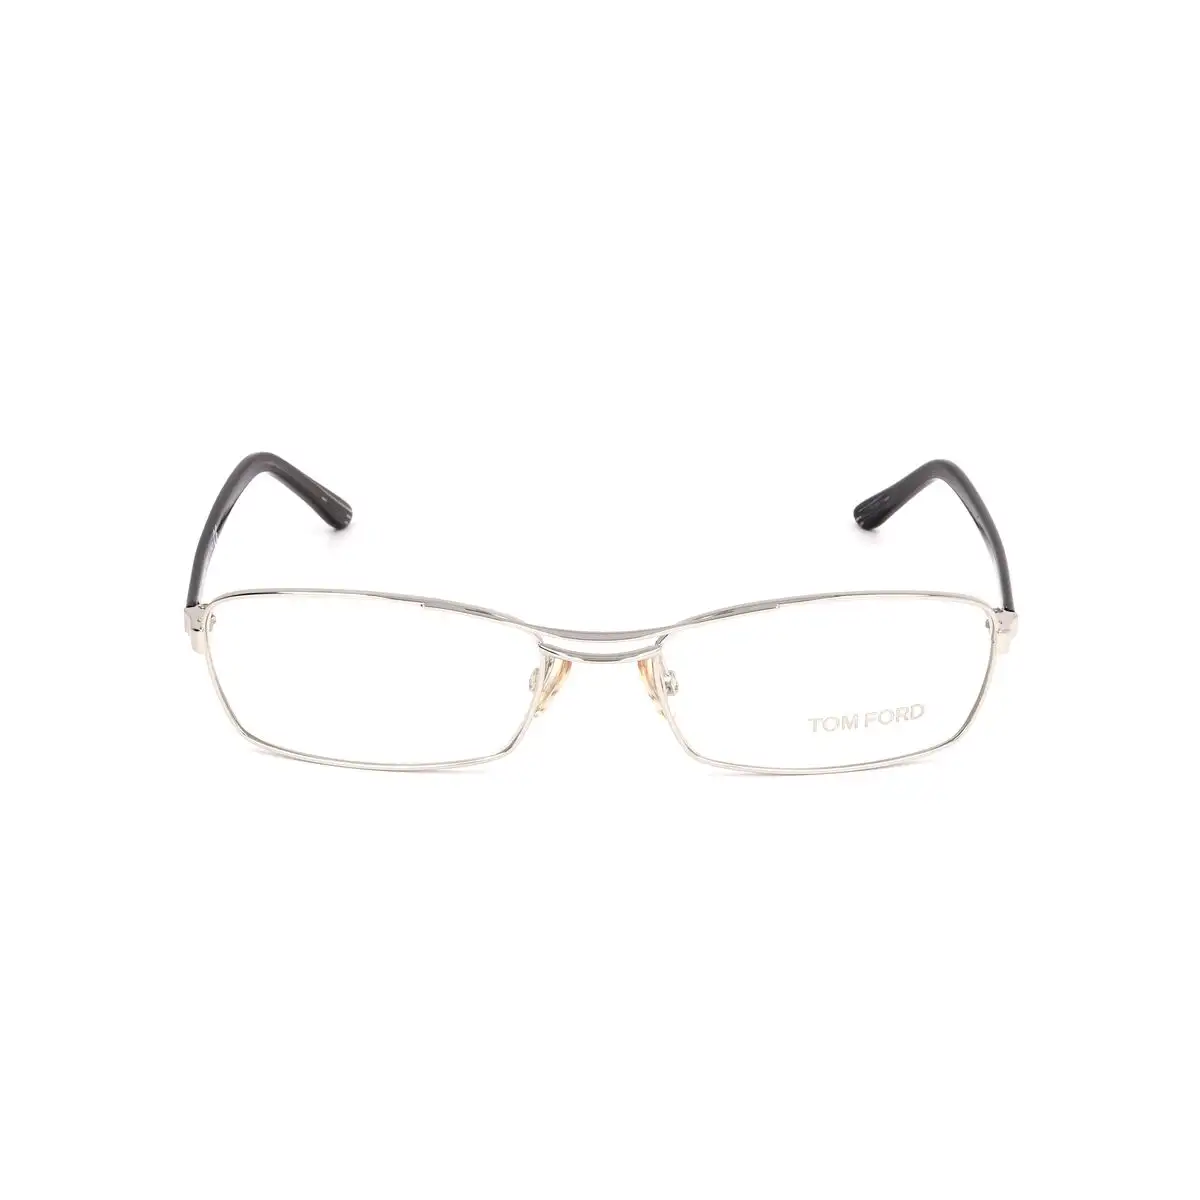 Monture de lunettes femme tom ford ft5024 751 54 argente_7555. DIAYTAR SENEGAL - L'Art de Magasiner sans Limites. Naviguez à travers notre collection diversifiée pour trouver des produits qui élargiront vos horizons shopping.